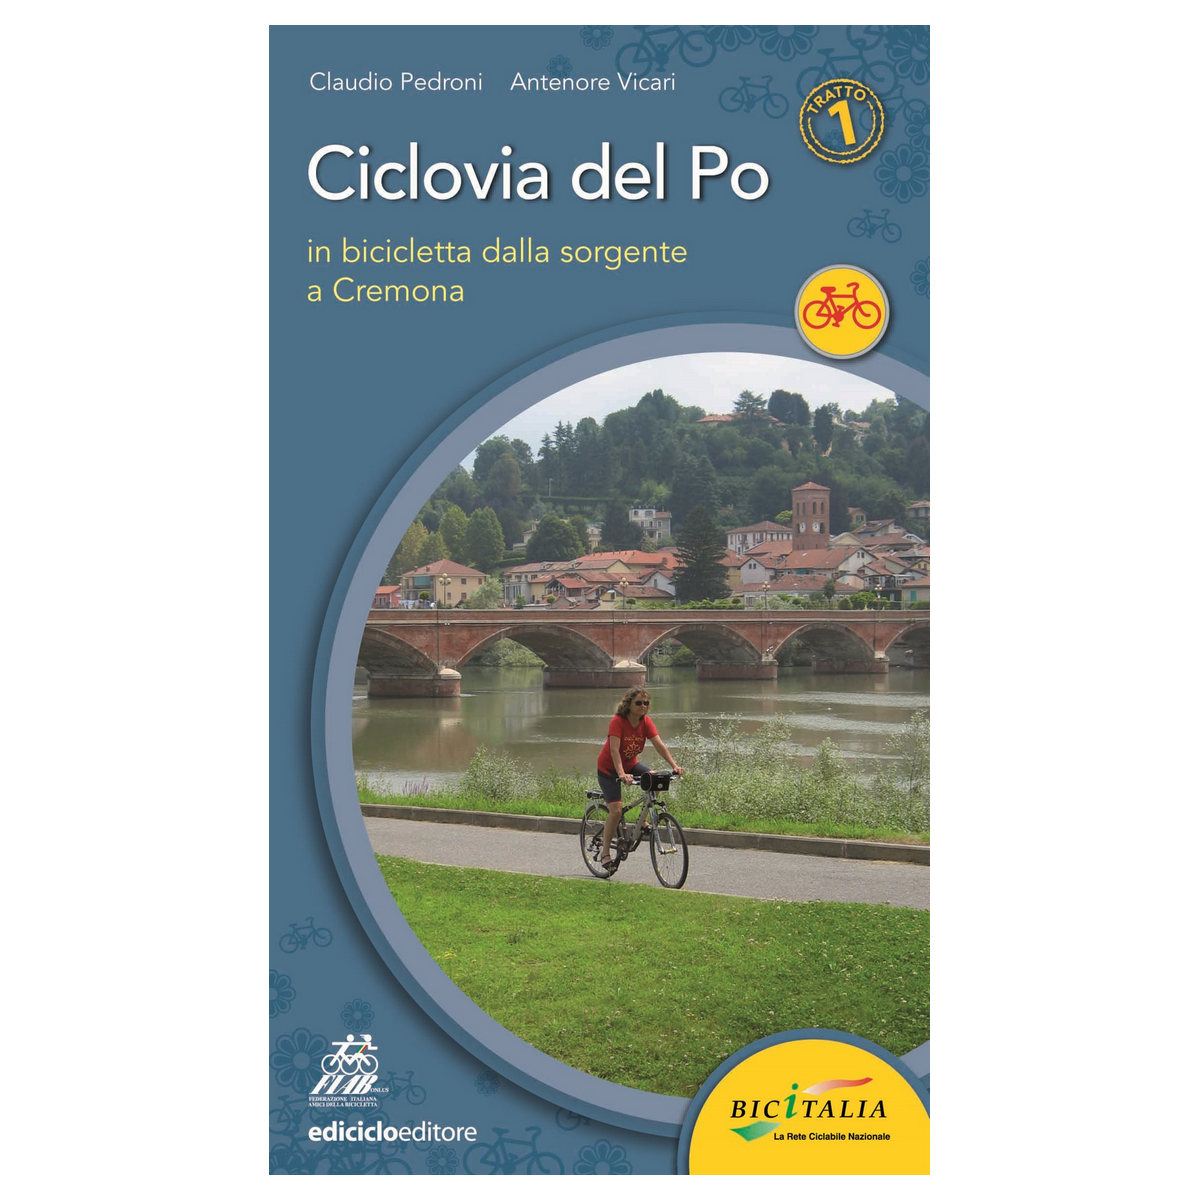 Livre Ciclovia del Po tratto 1- Dalla sorgente a Cremona, Pedroni, Vicari